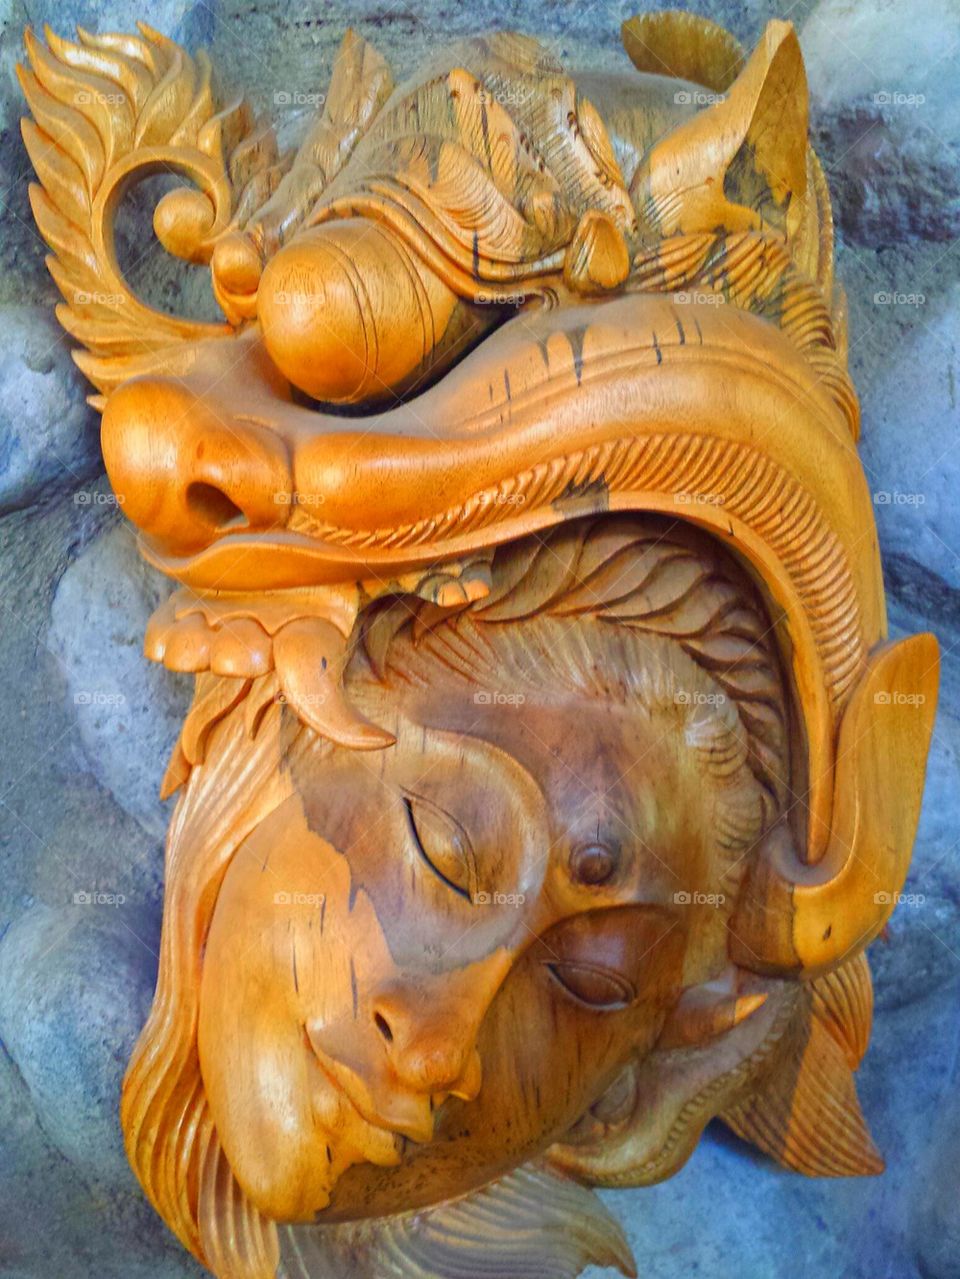 "Carved Wooden Diva Sculpture"